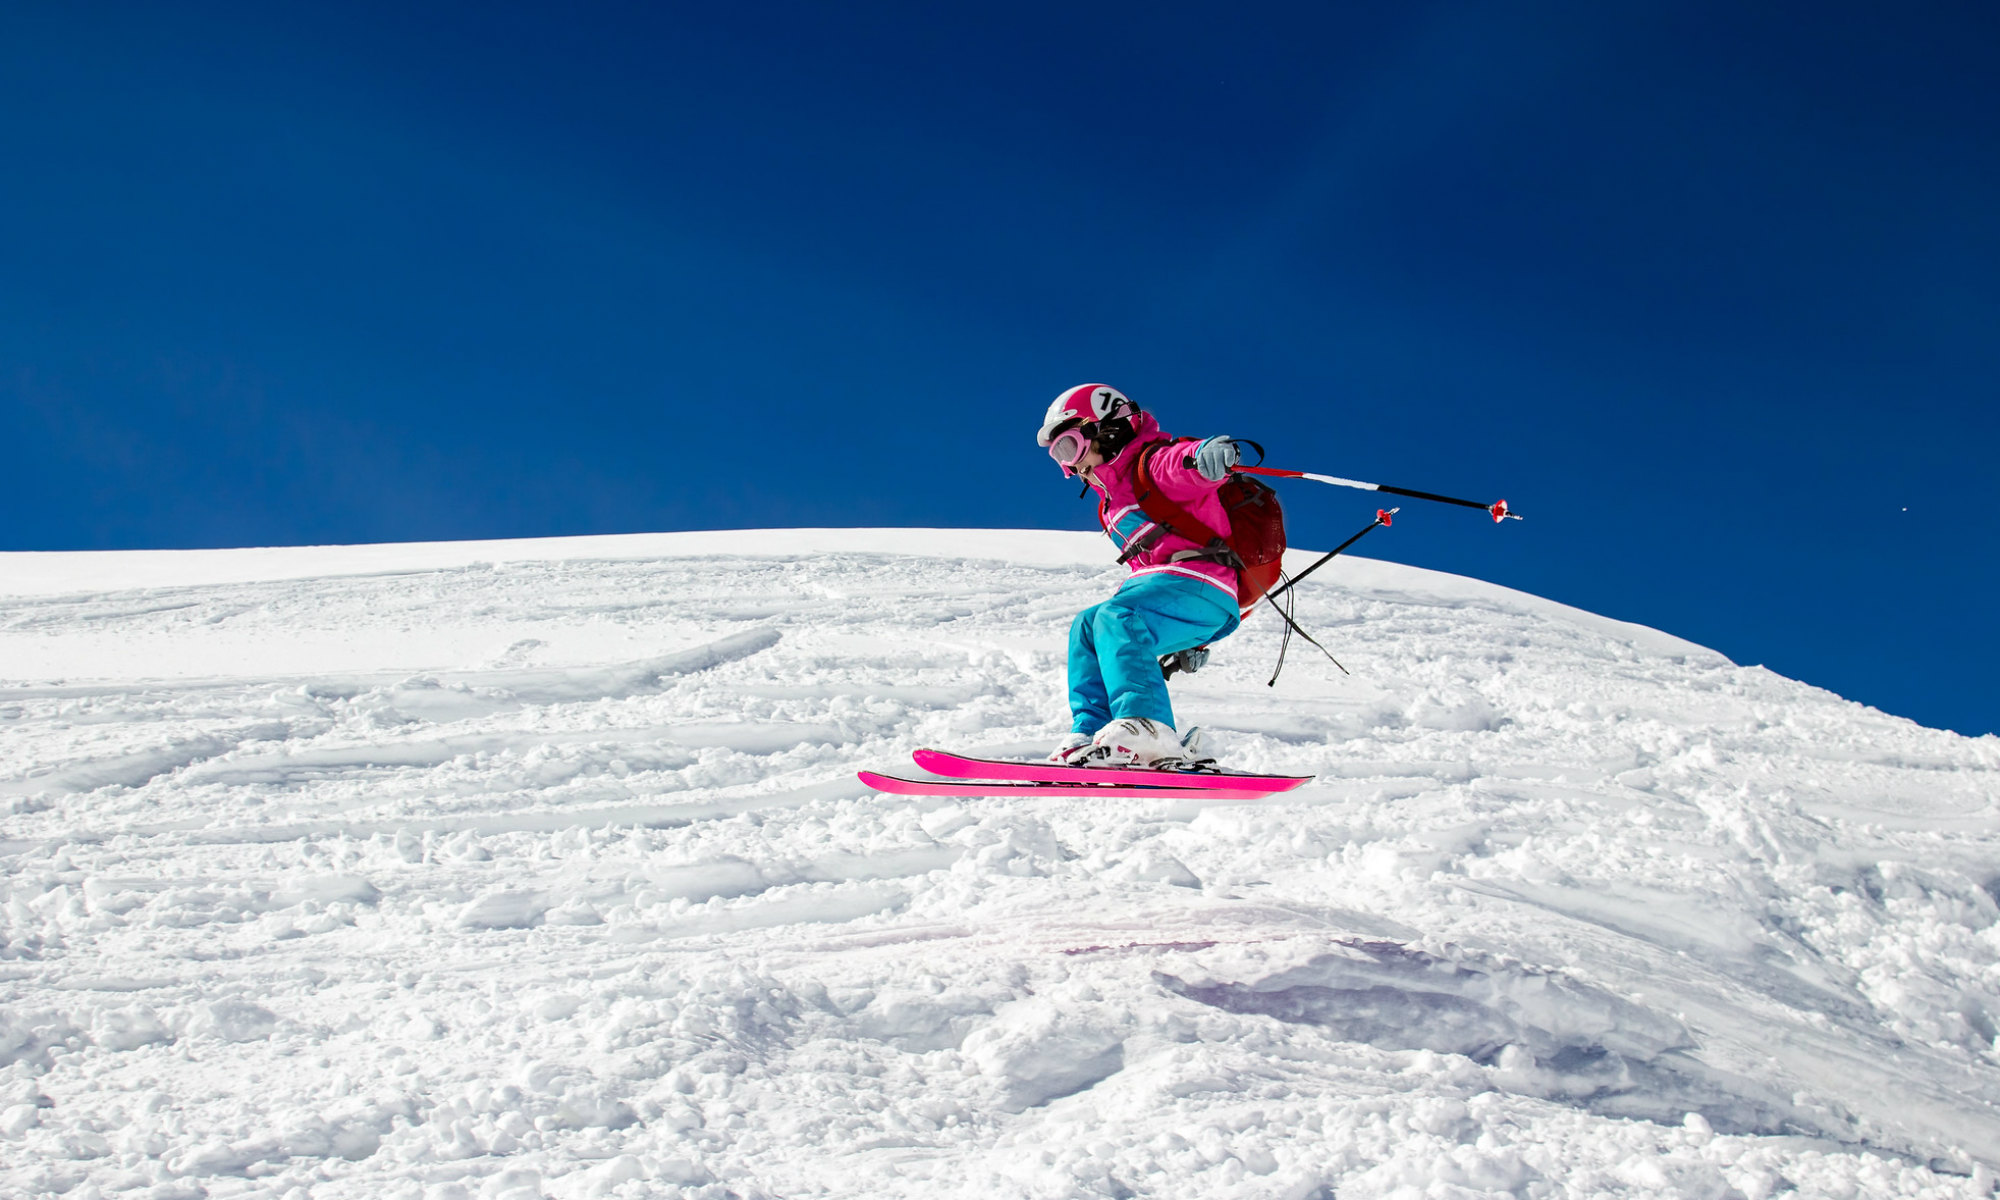 Une jeune ado effectue un saut lors d’un cours de ski hors piste aux Arcs.